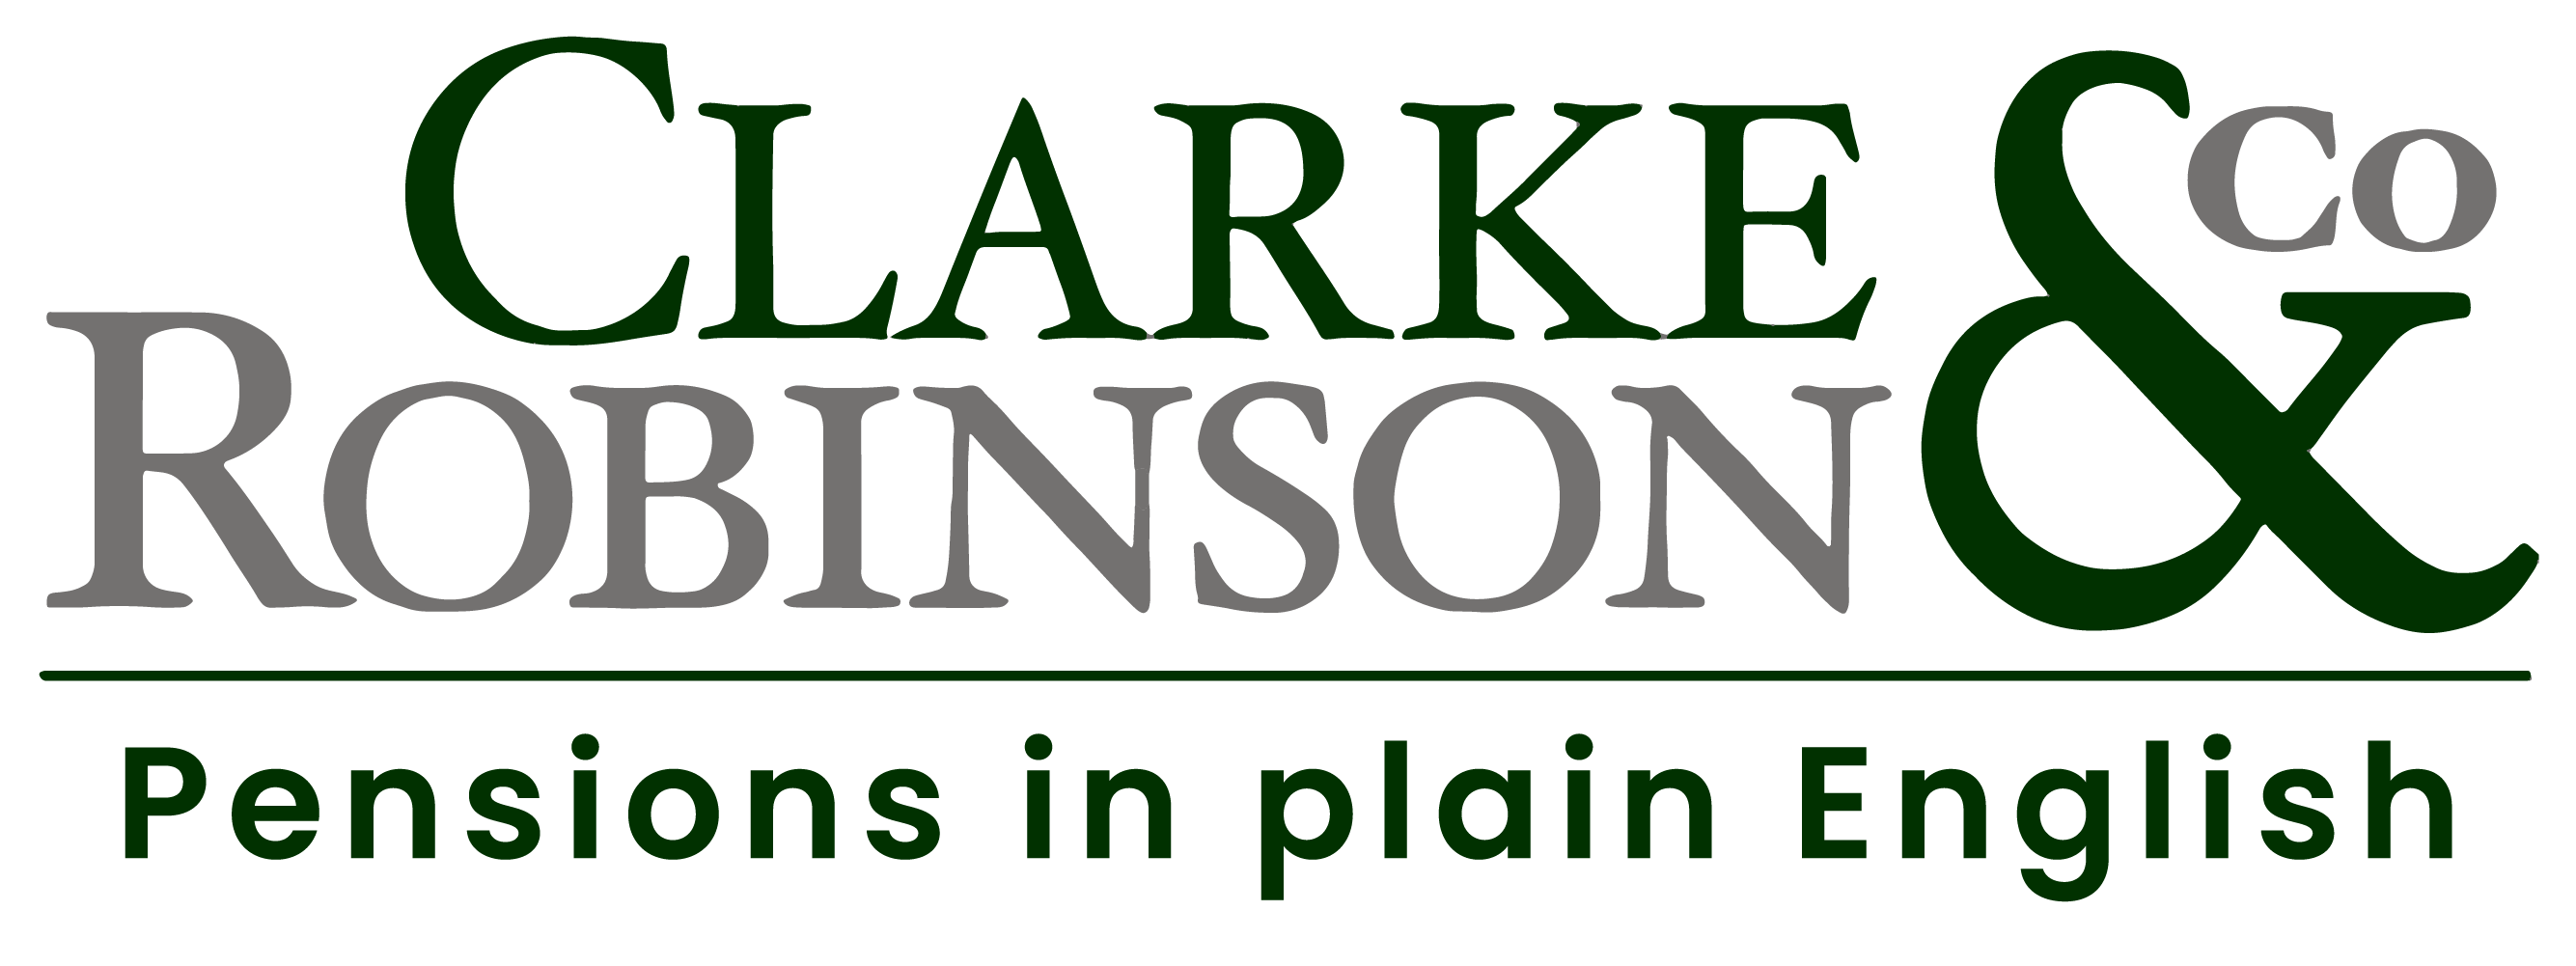 Clarke Robinson